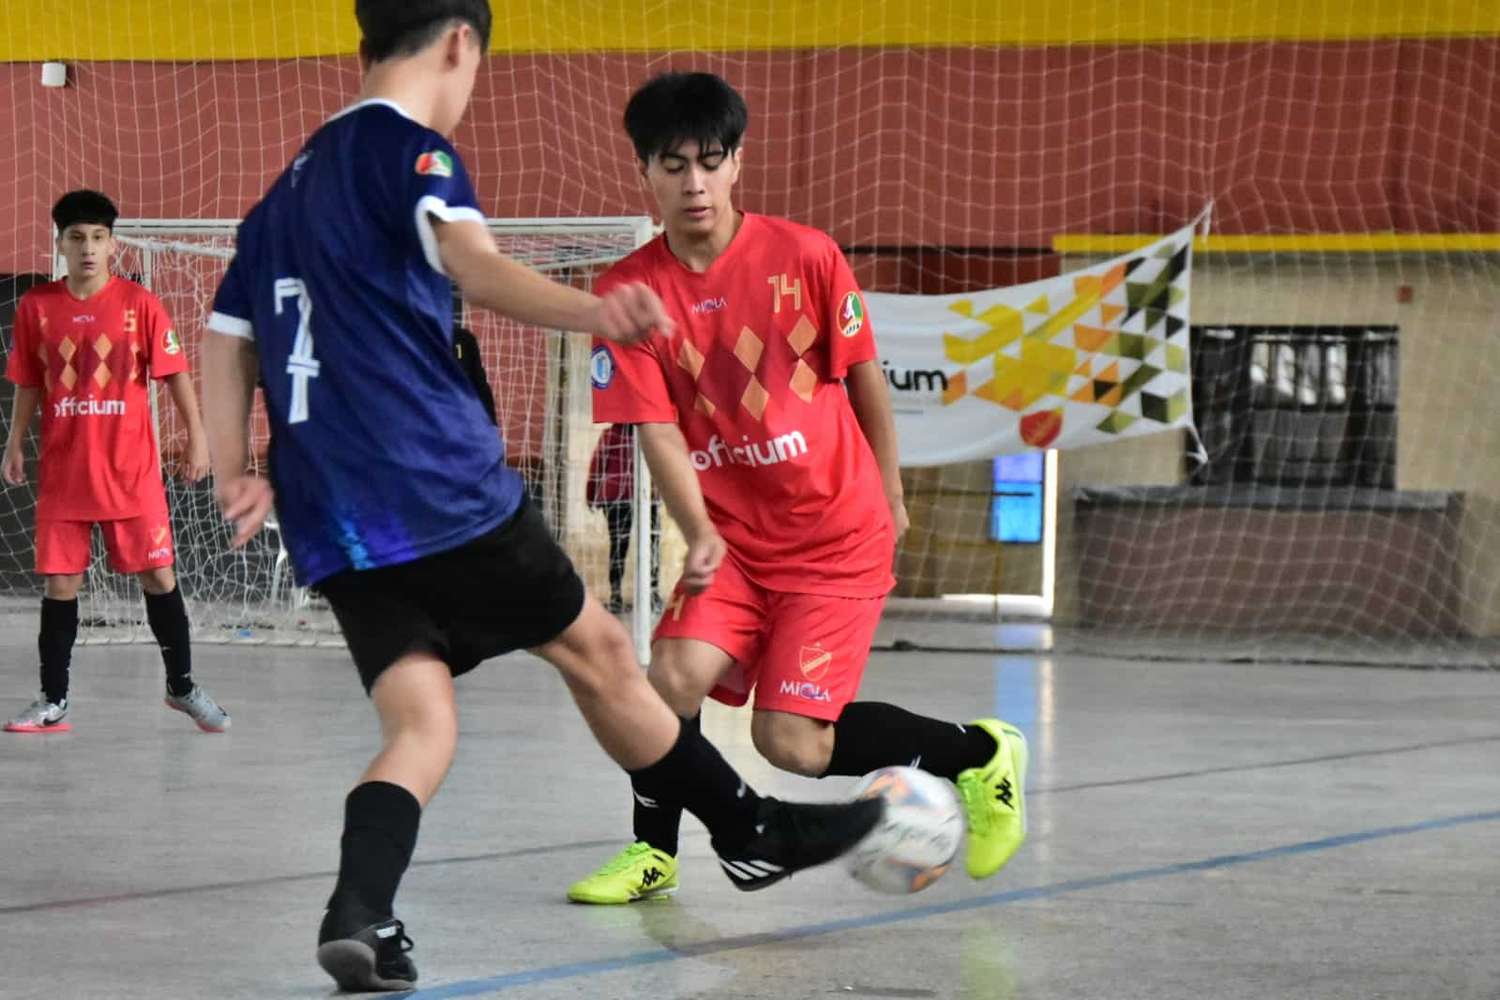 El domingo se juegan las finales de Futsal de las categorías formativas